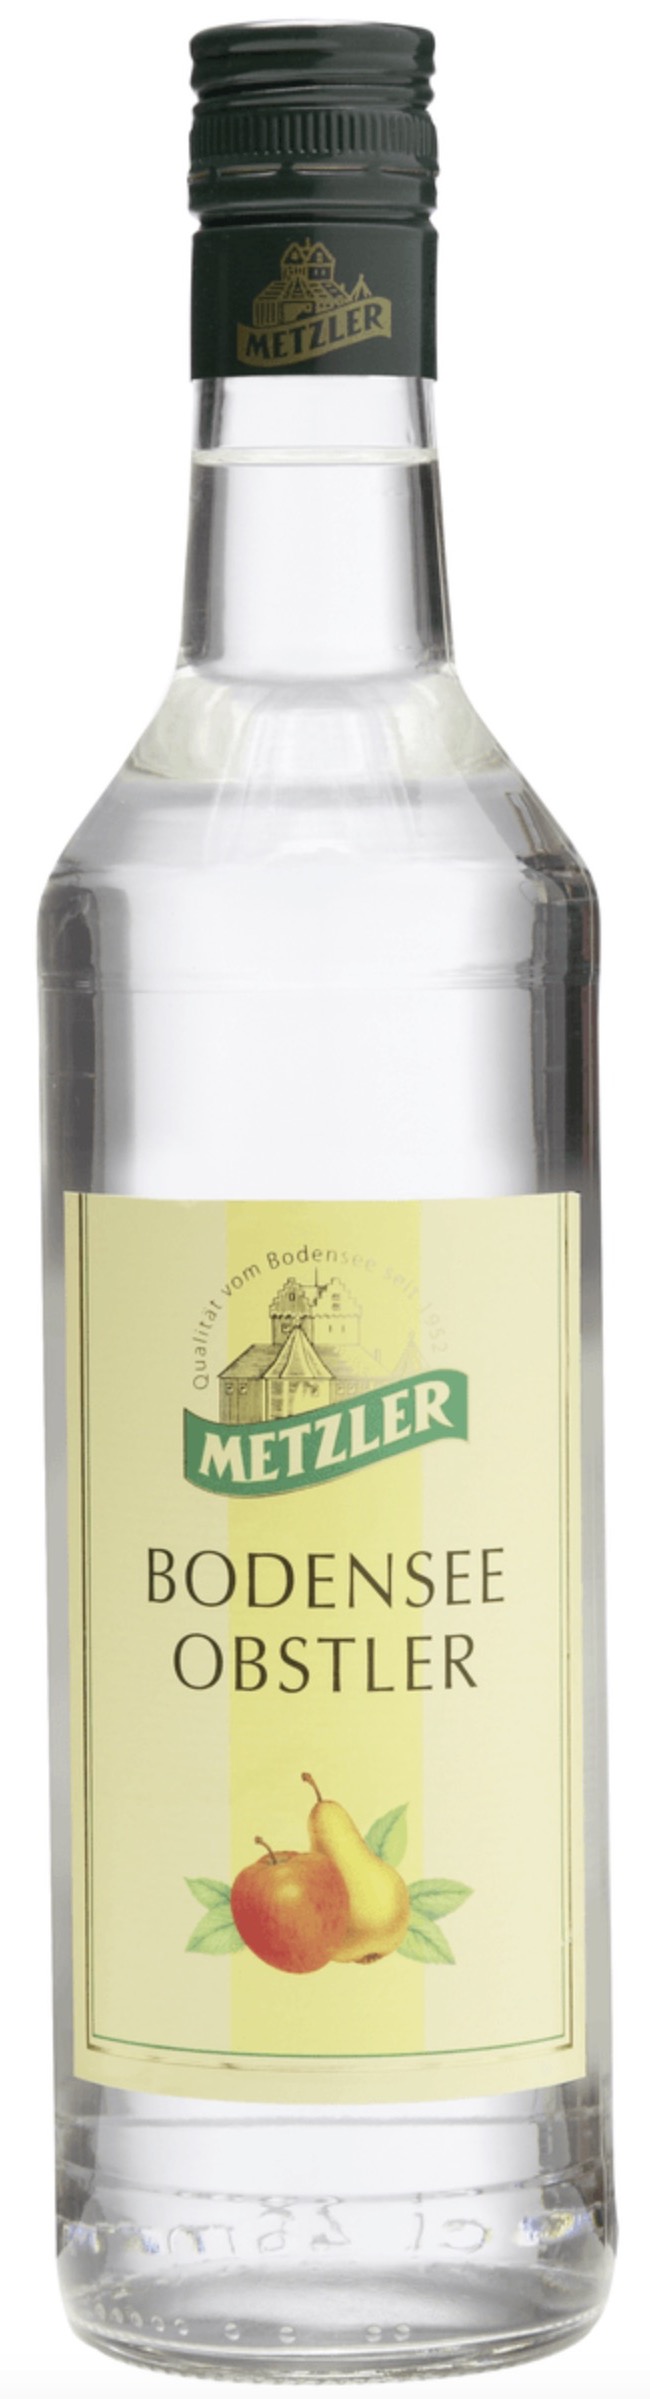 Metzler Bodensee Obstler 38% vol. 0,7L